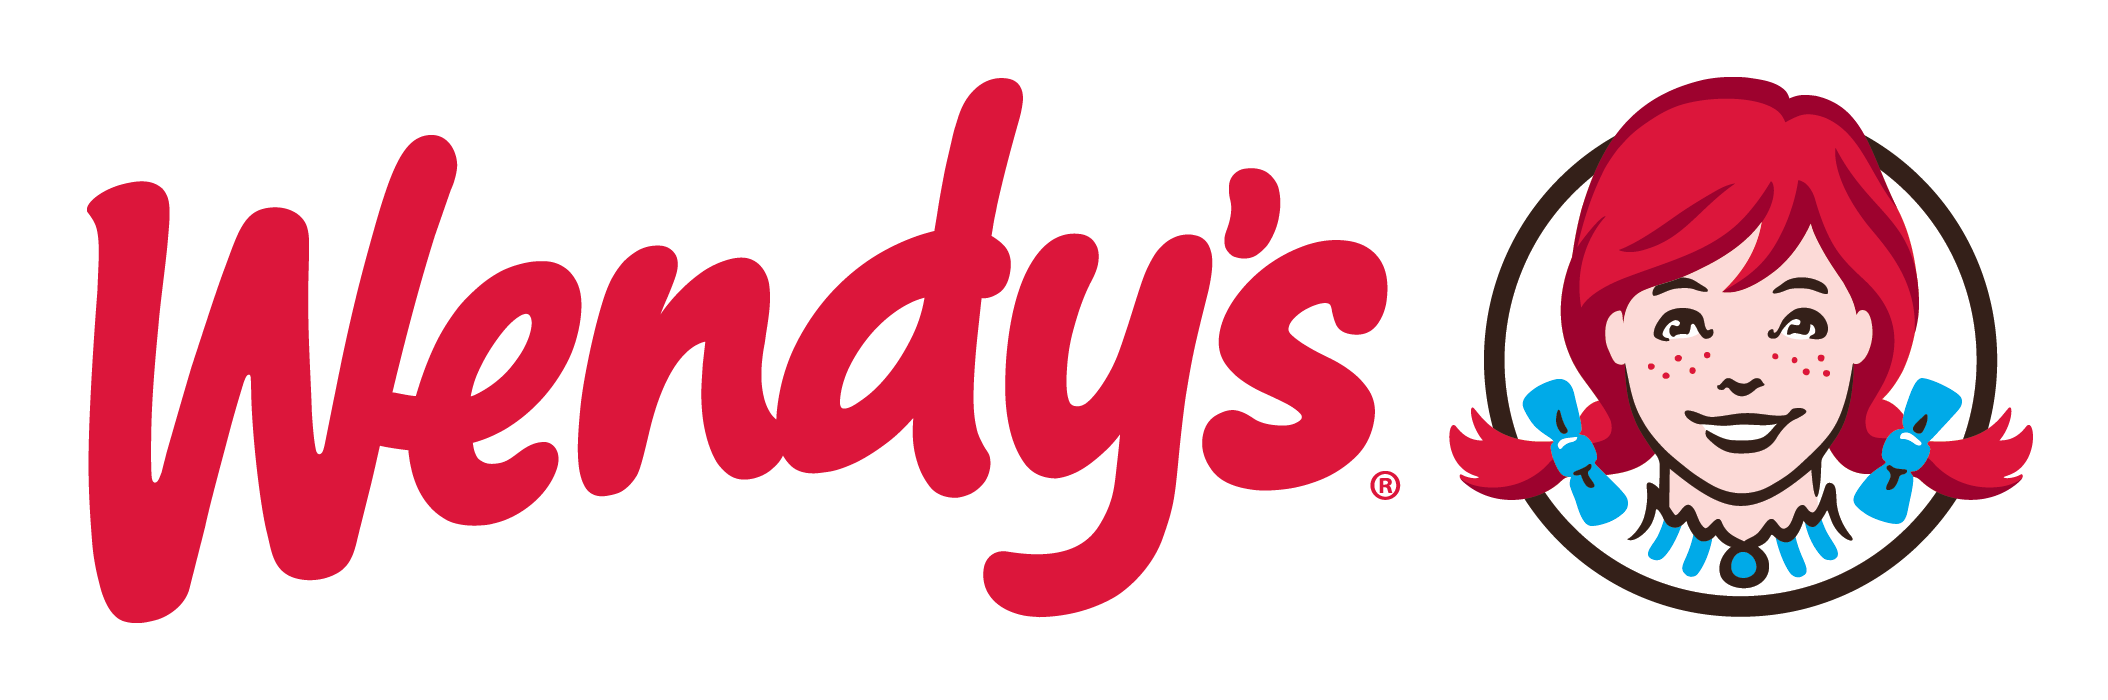 Wendys-Logo.png